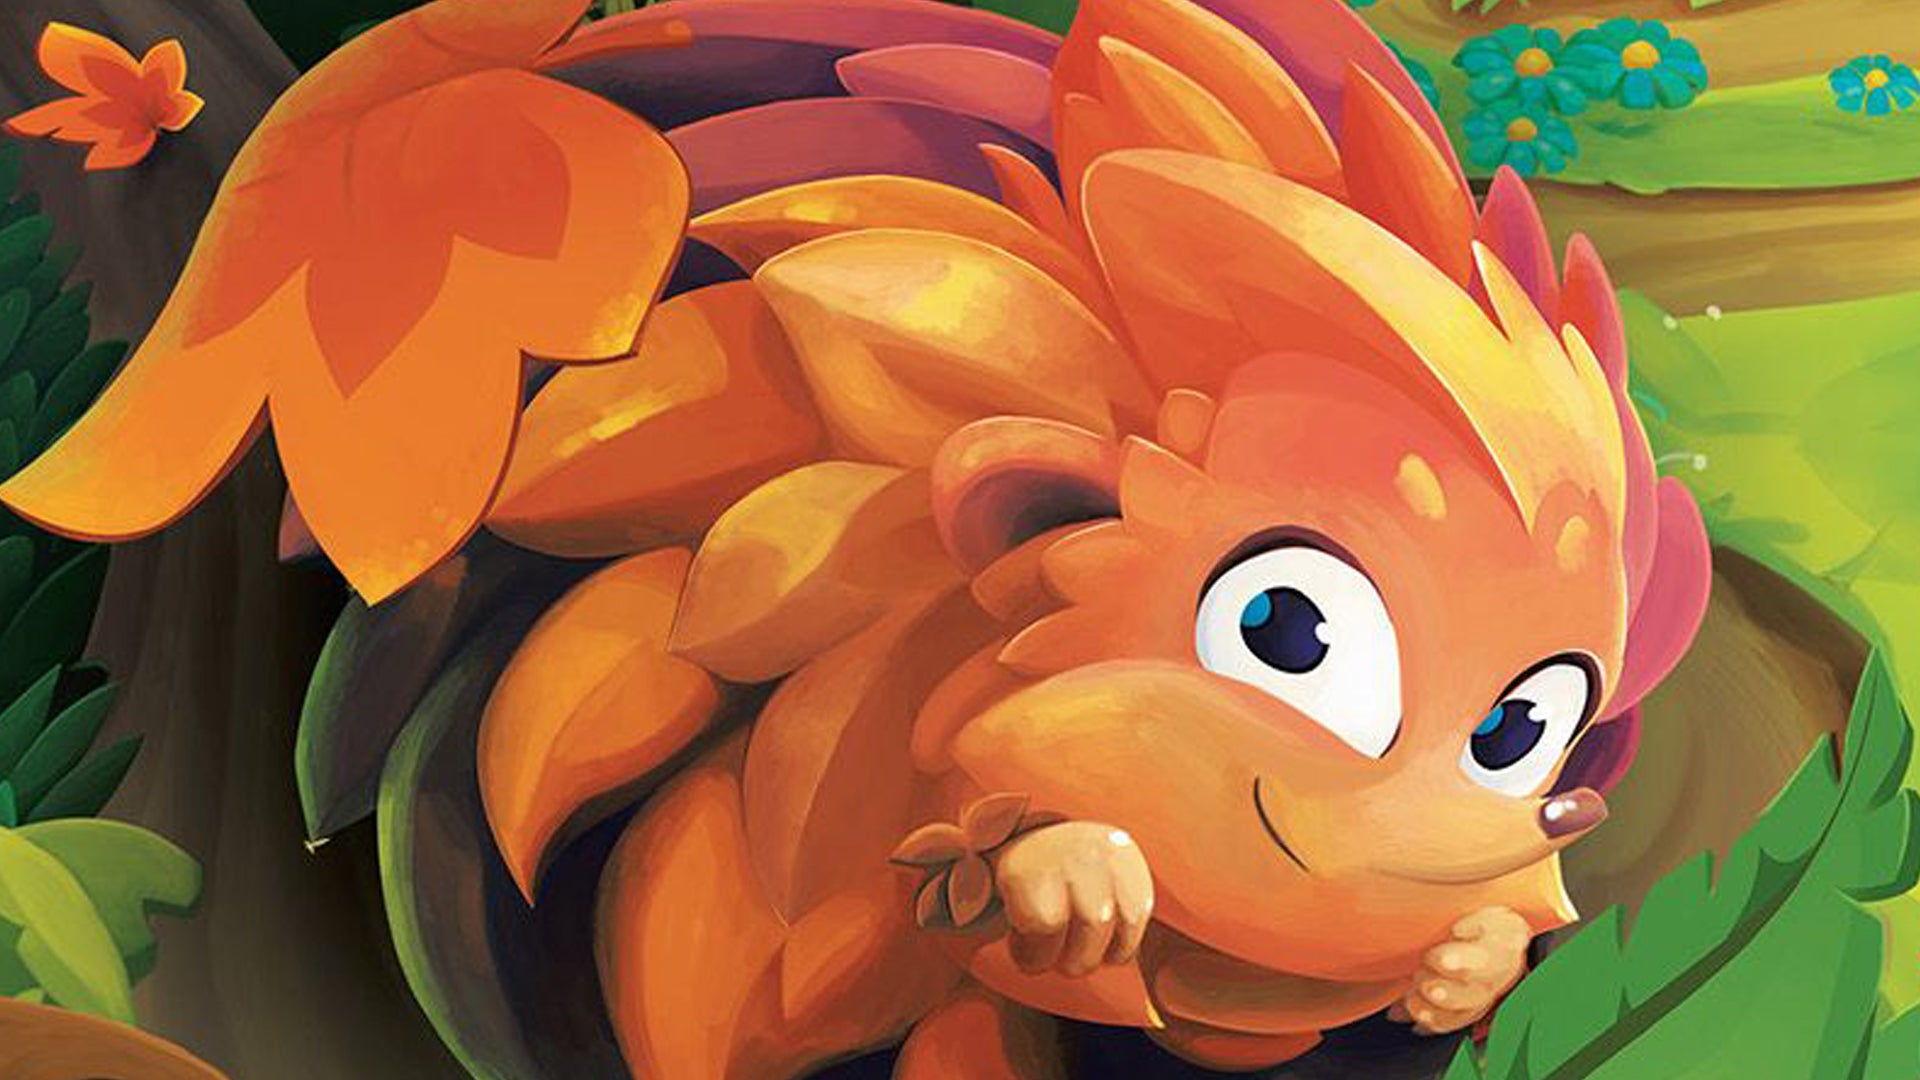 Image for Hedgehog Roll named Kids’ Game of the Year at 2020 Kinderspiel des Jahres